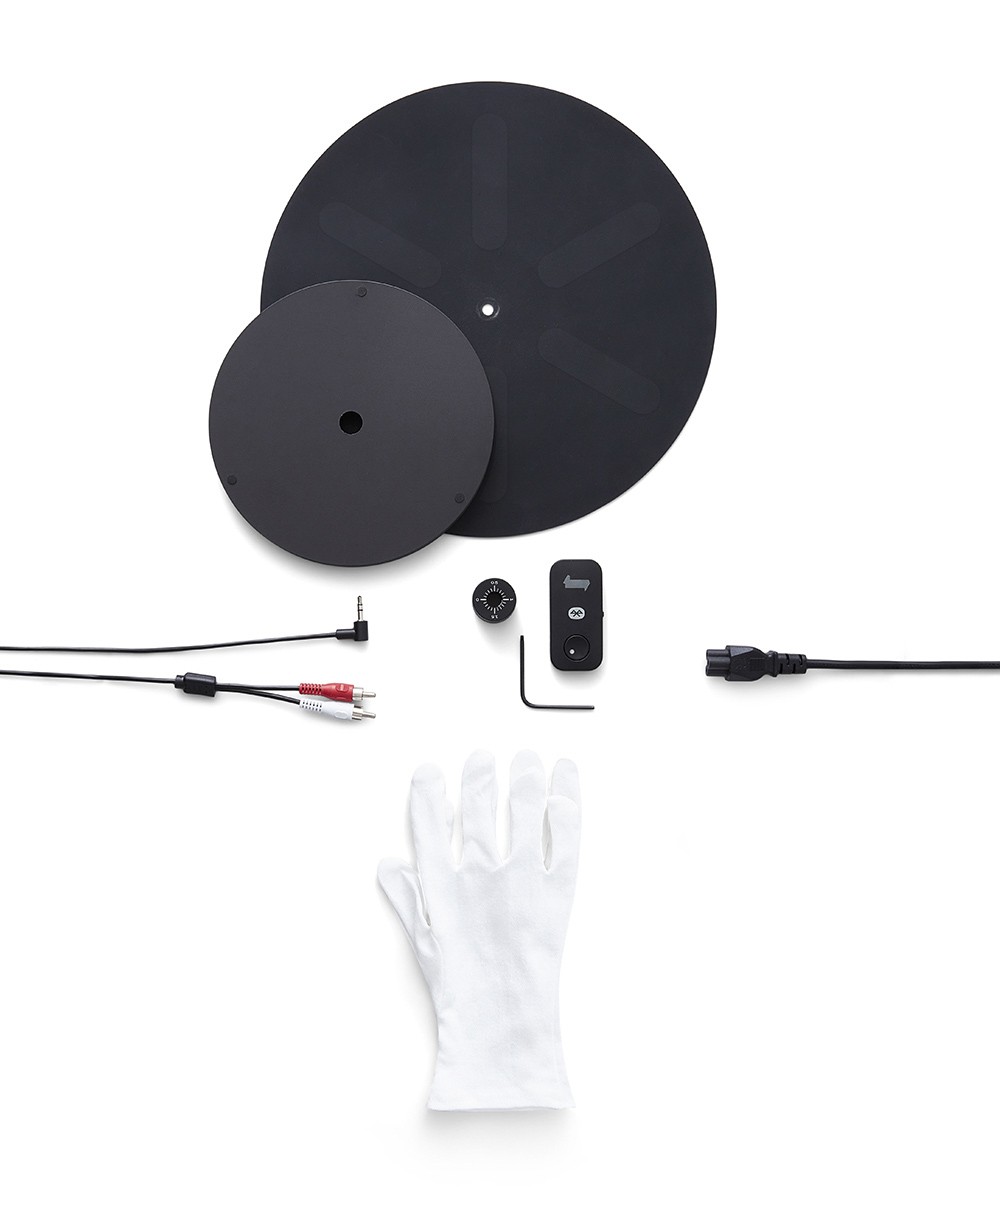 Hier ist ein Produktfoto des Transparent Turntables in der Farbe Black von der Marke Transparent Sound zu sehen – im Onlineshop RAUM concept store